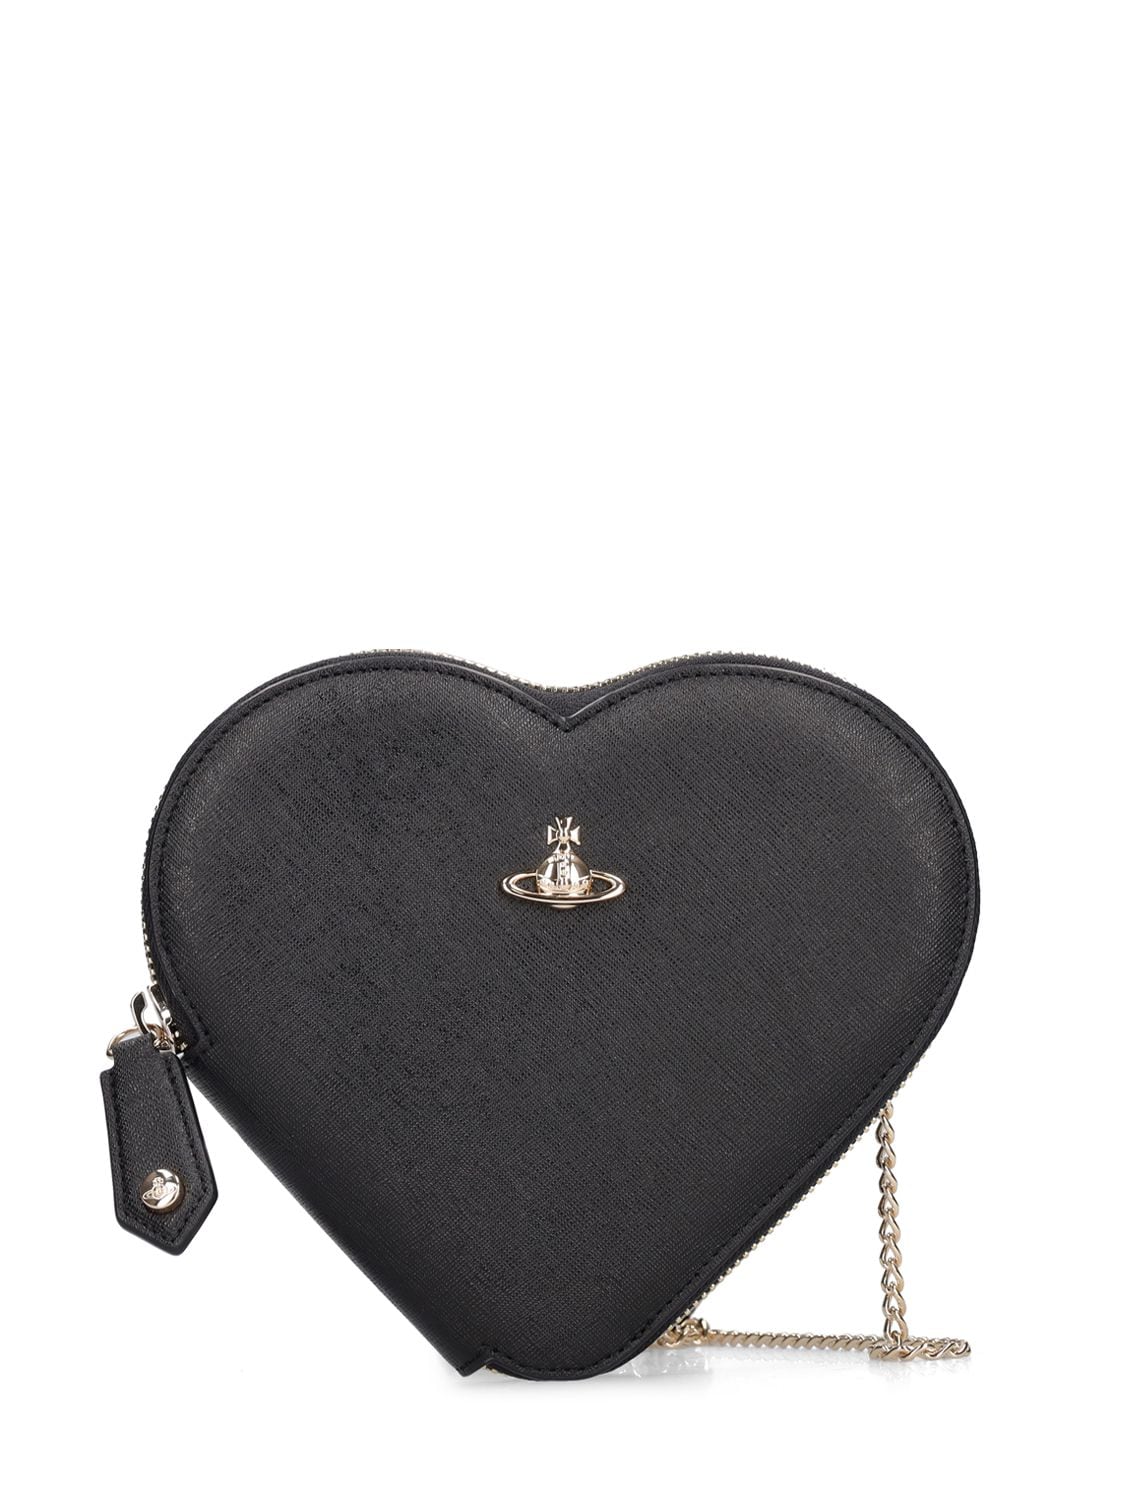 Vivienne Westwood Saffiano New Heart Leather Shoulder Bag In Black